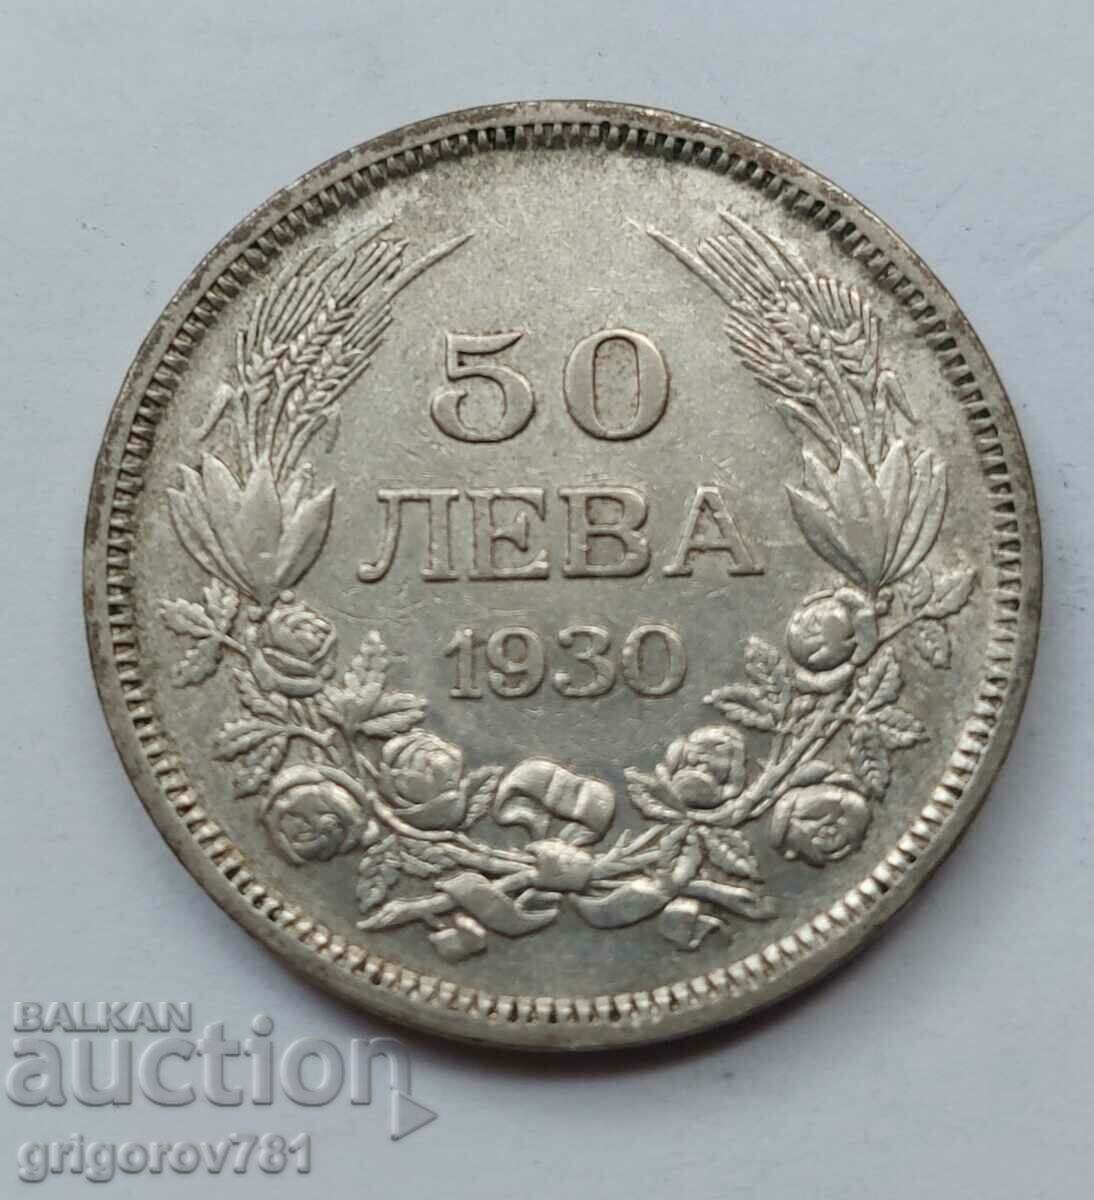 50 leva argint Bulgaria 1930 - monedă de argint #65